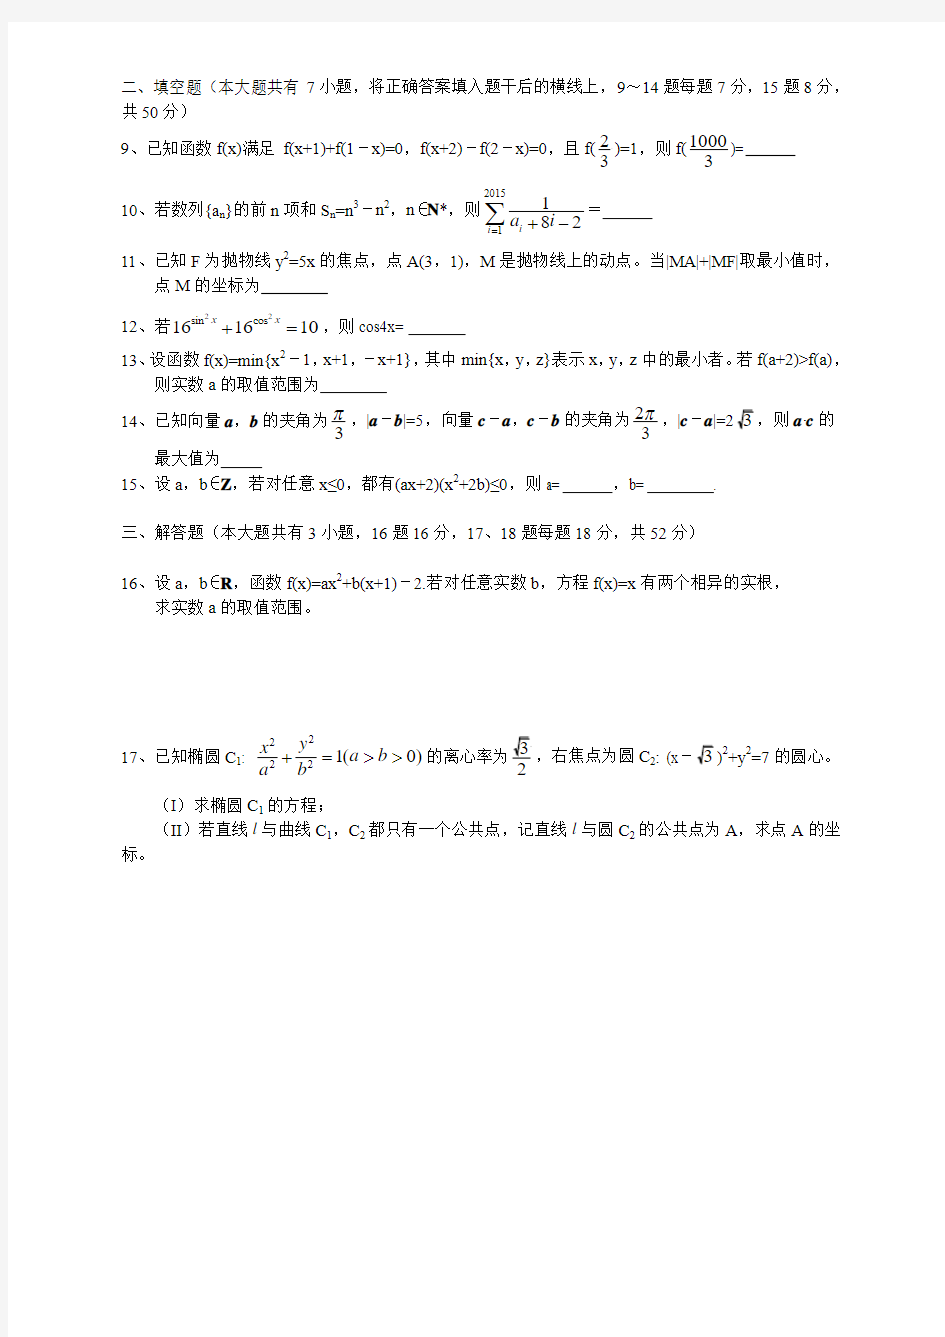 2015年浙江省数学竞赛试题与答案解析(详细解答)